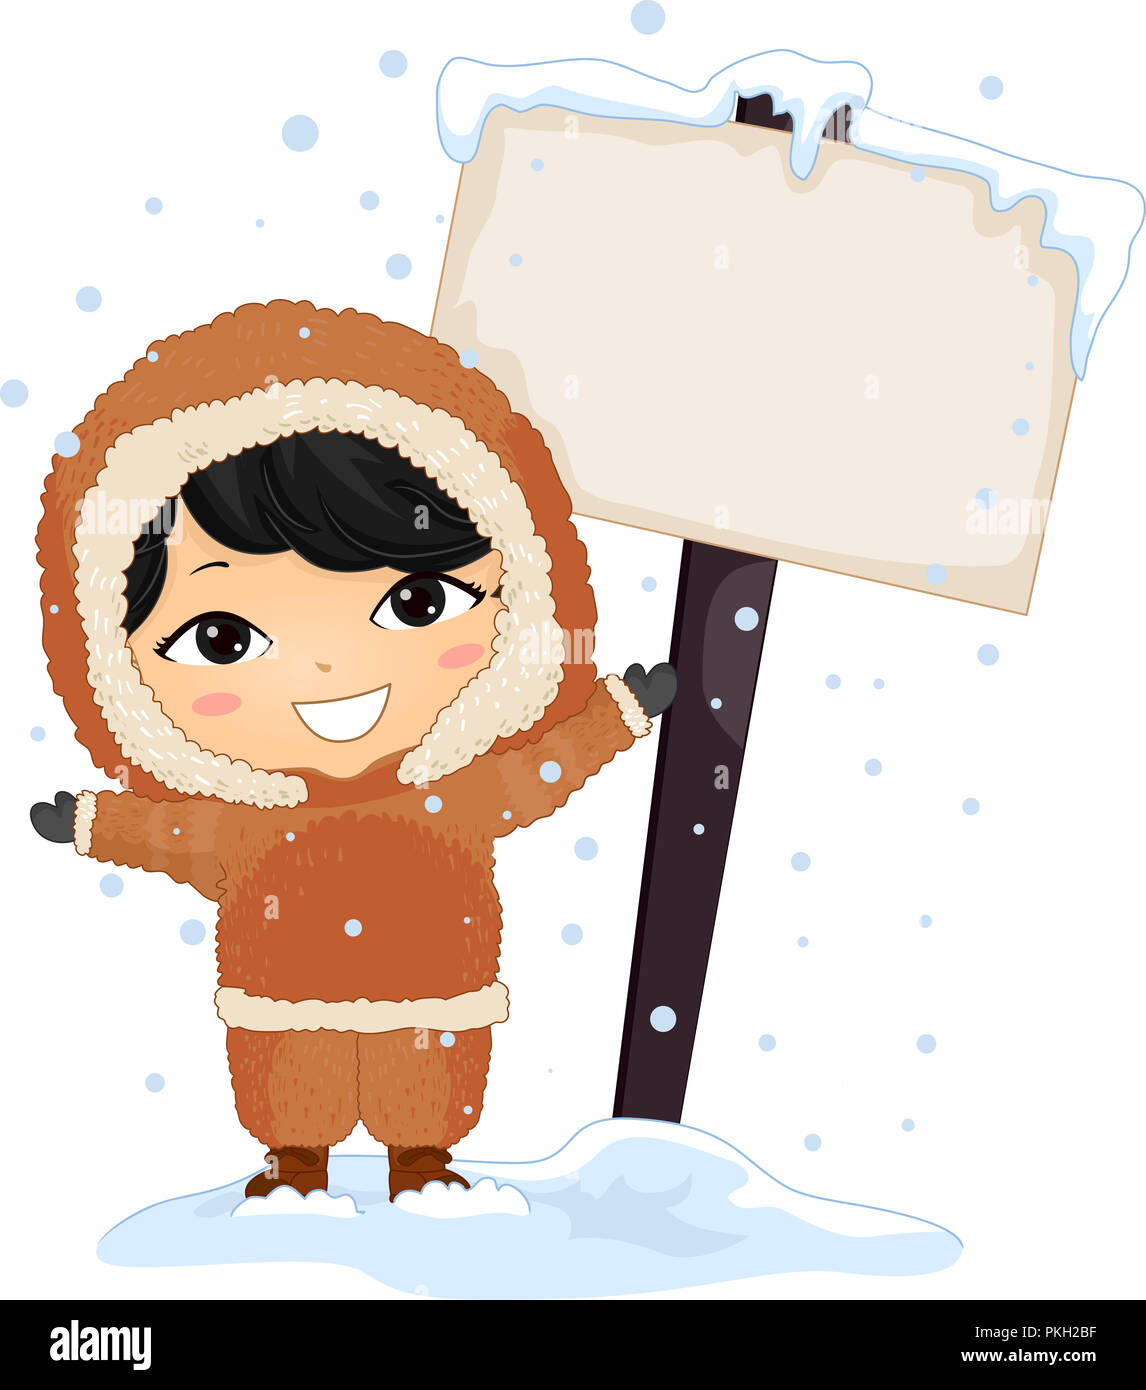 Illustration d'un enfant garçon Eskimo debout à côté d'un affichage en blanc alors que l'enneigement Banque D'Images